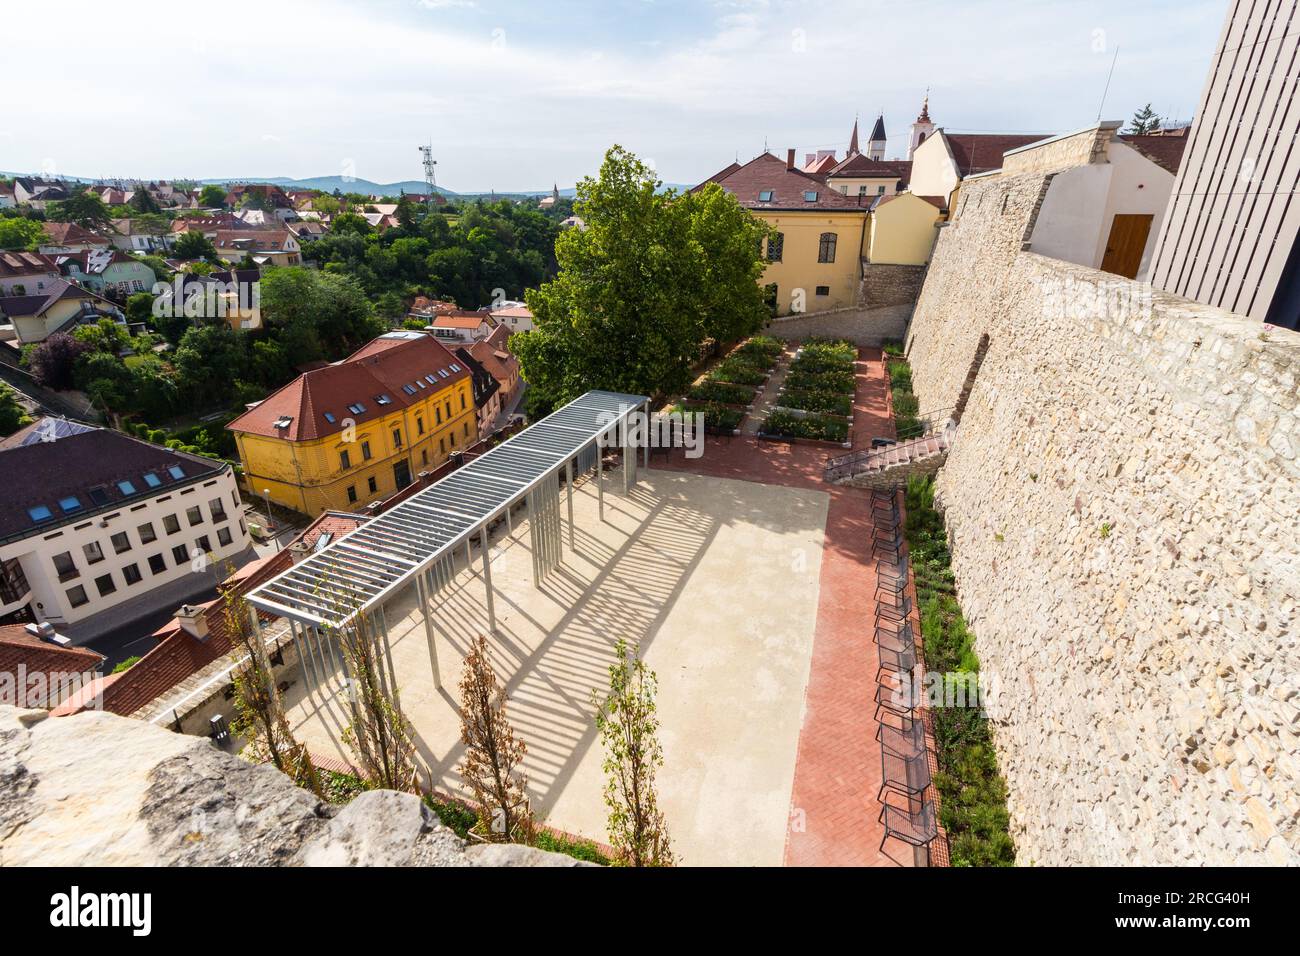 Terrasse d'observation moderne dans le quartier du château, Veszprem, Hongrie Banque D'Images